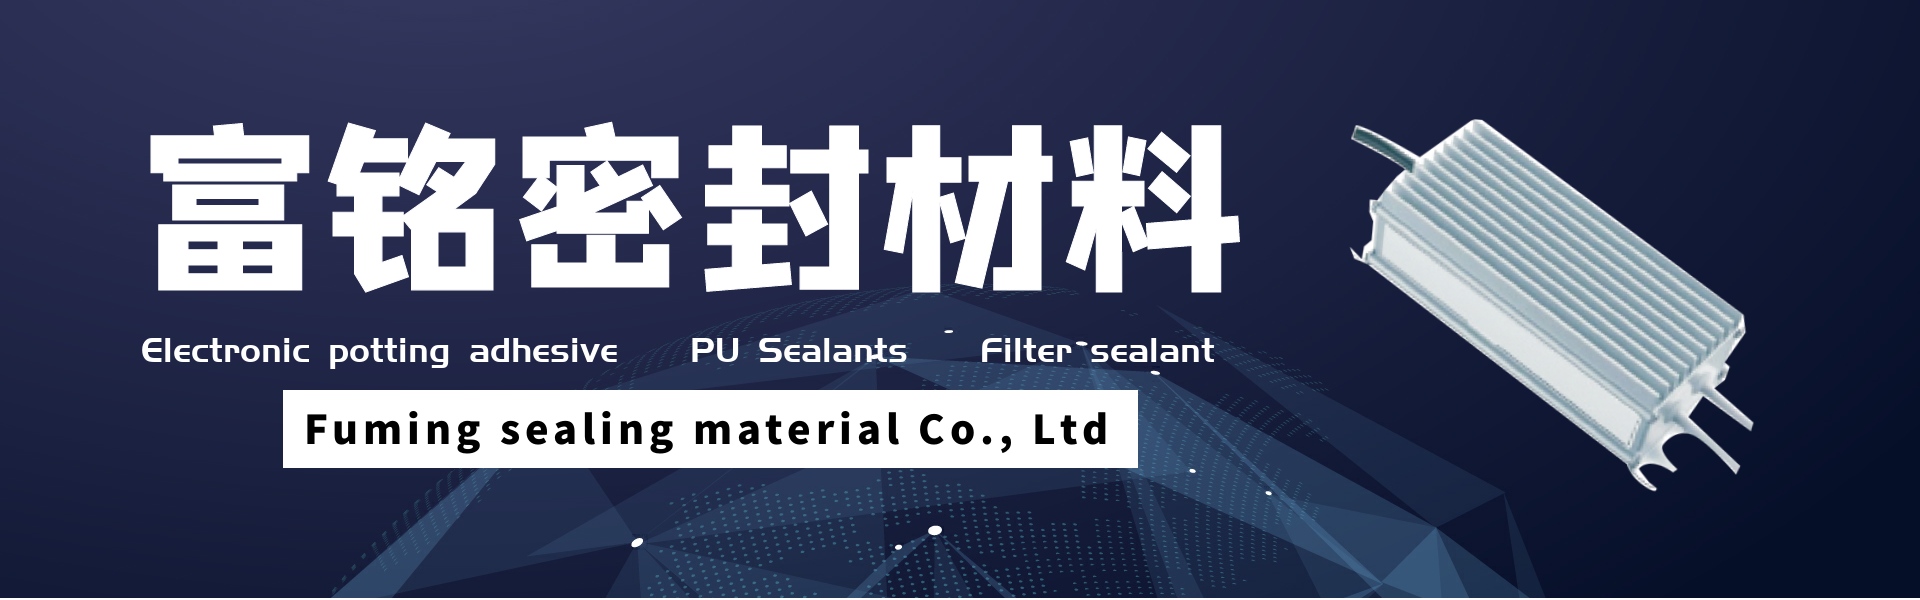 електронно залепващо лепило, pu уплътнители, филтър,Dongguan fuming sealing material Co., Ltd